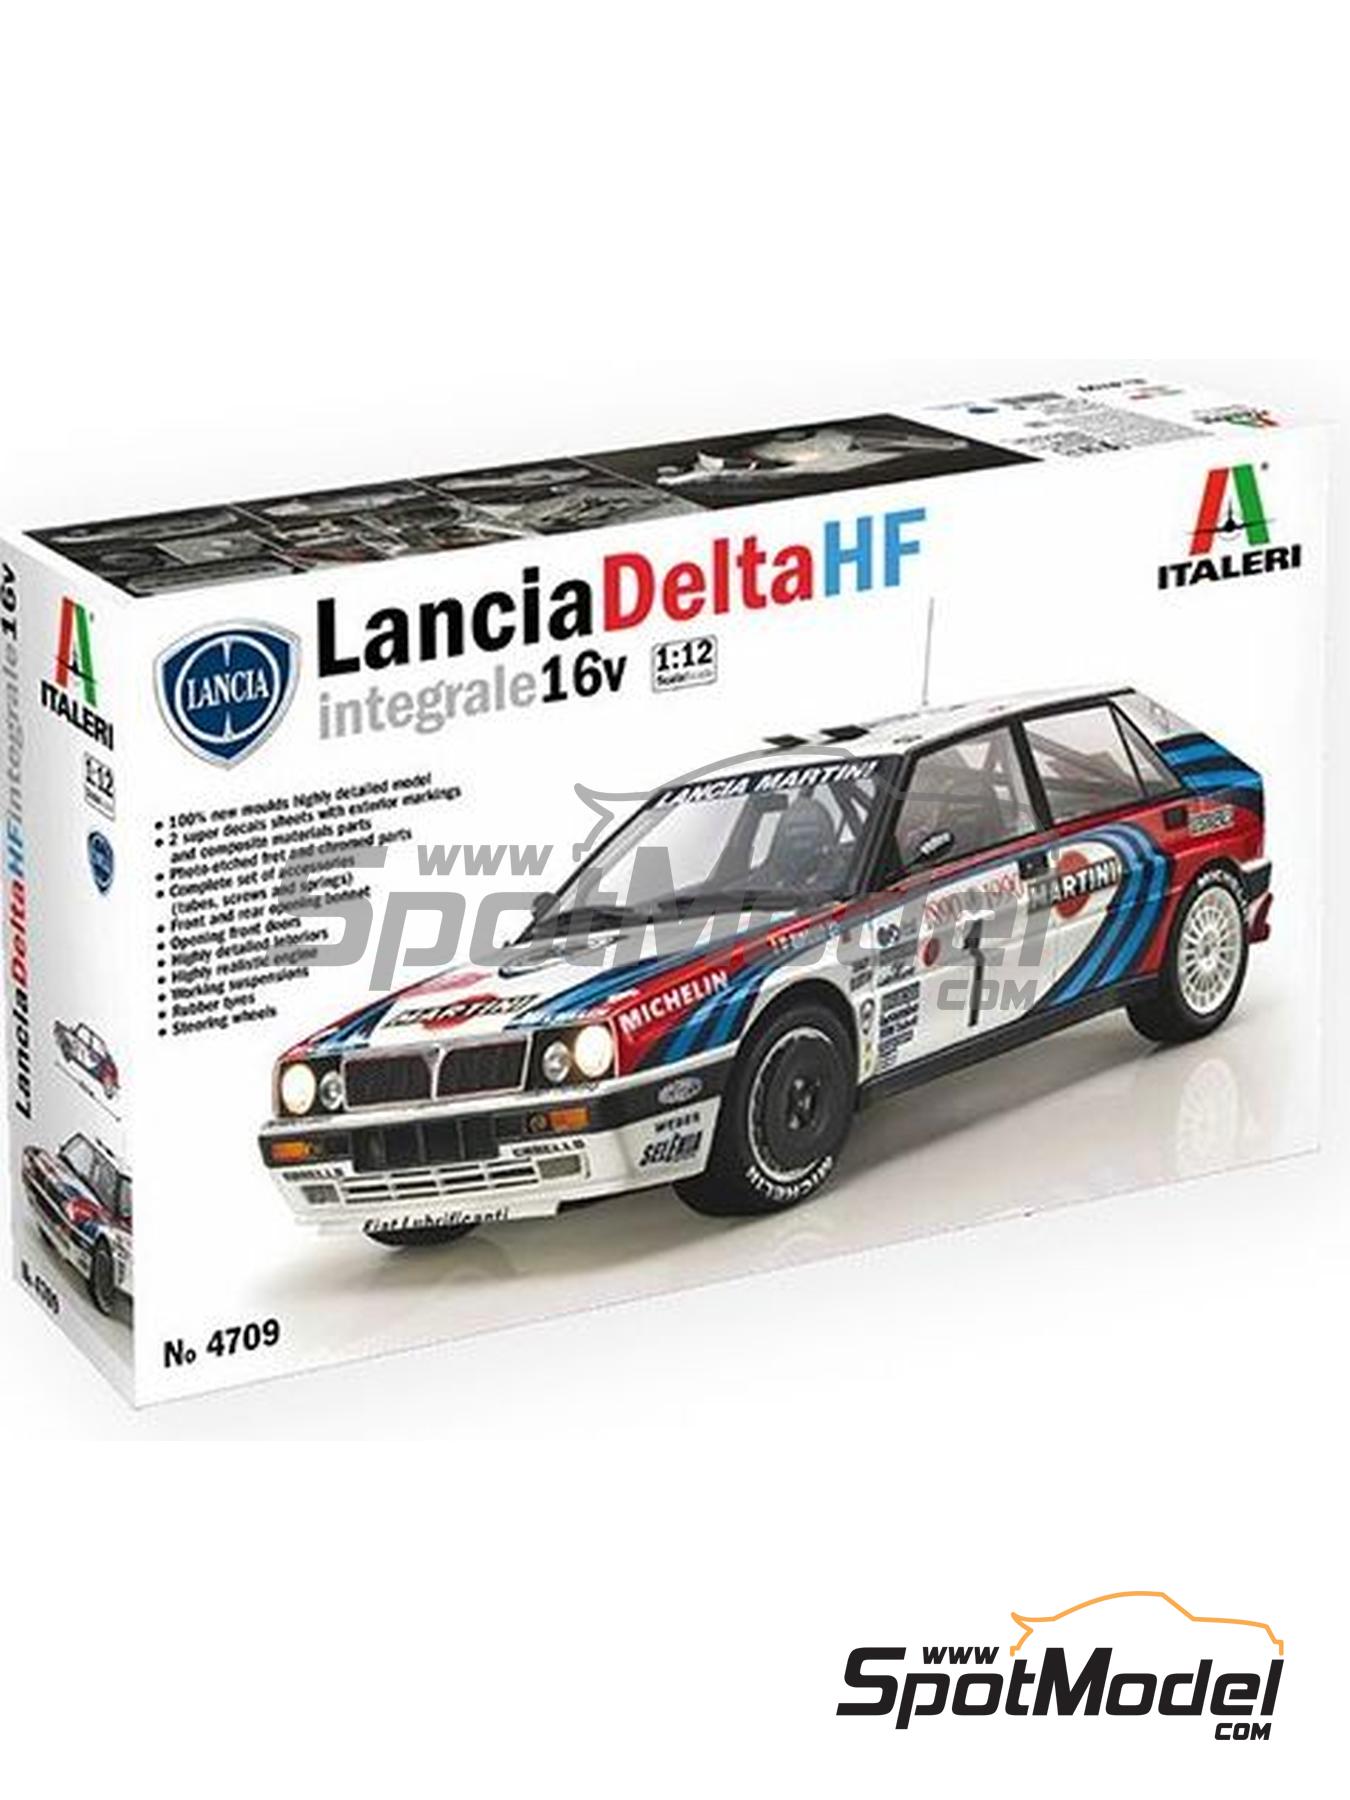 Italeri 1:12 4709 Lancia Delta HF integrale 16v Model Car Kit